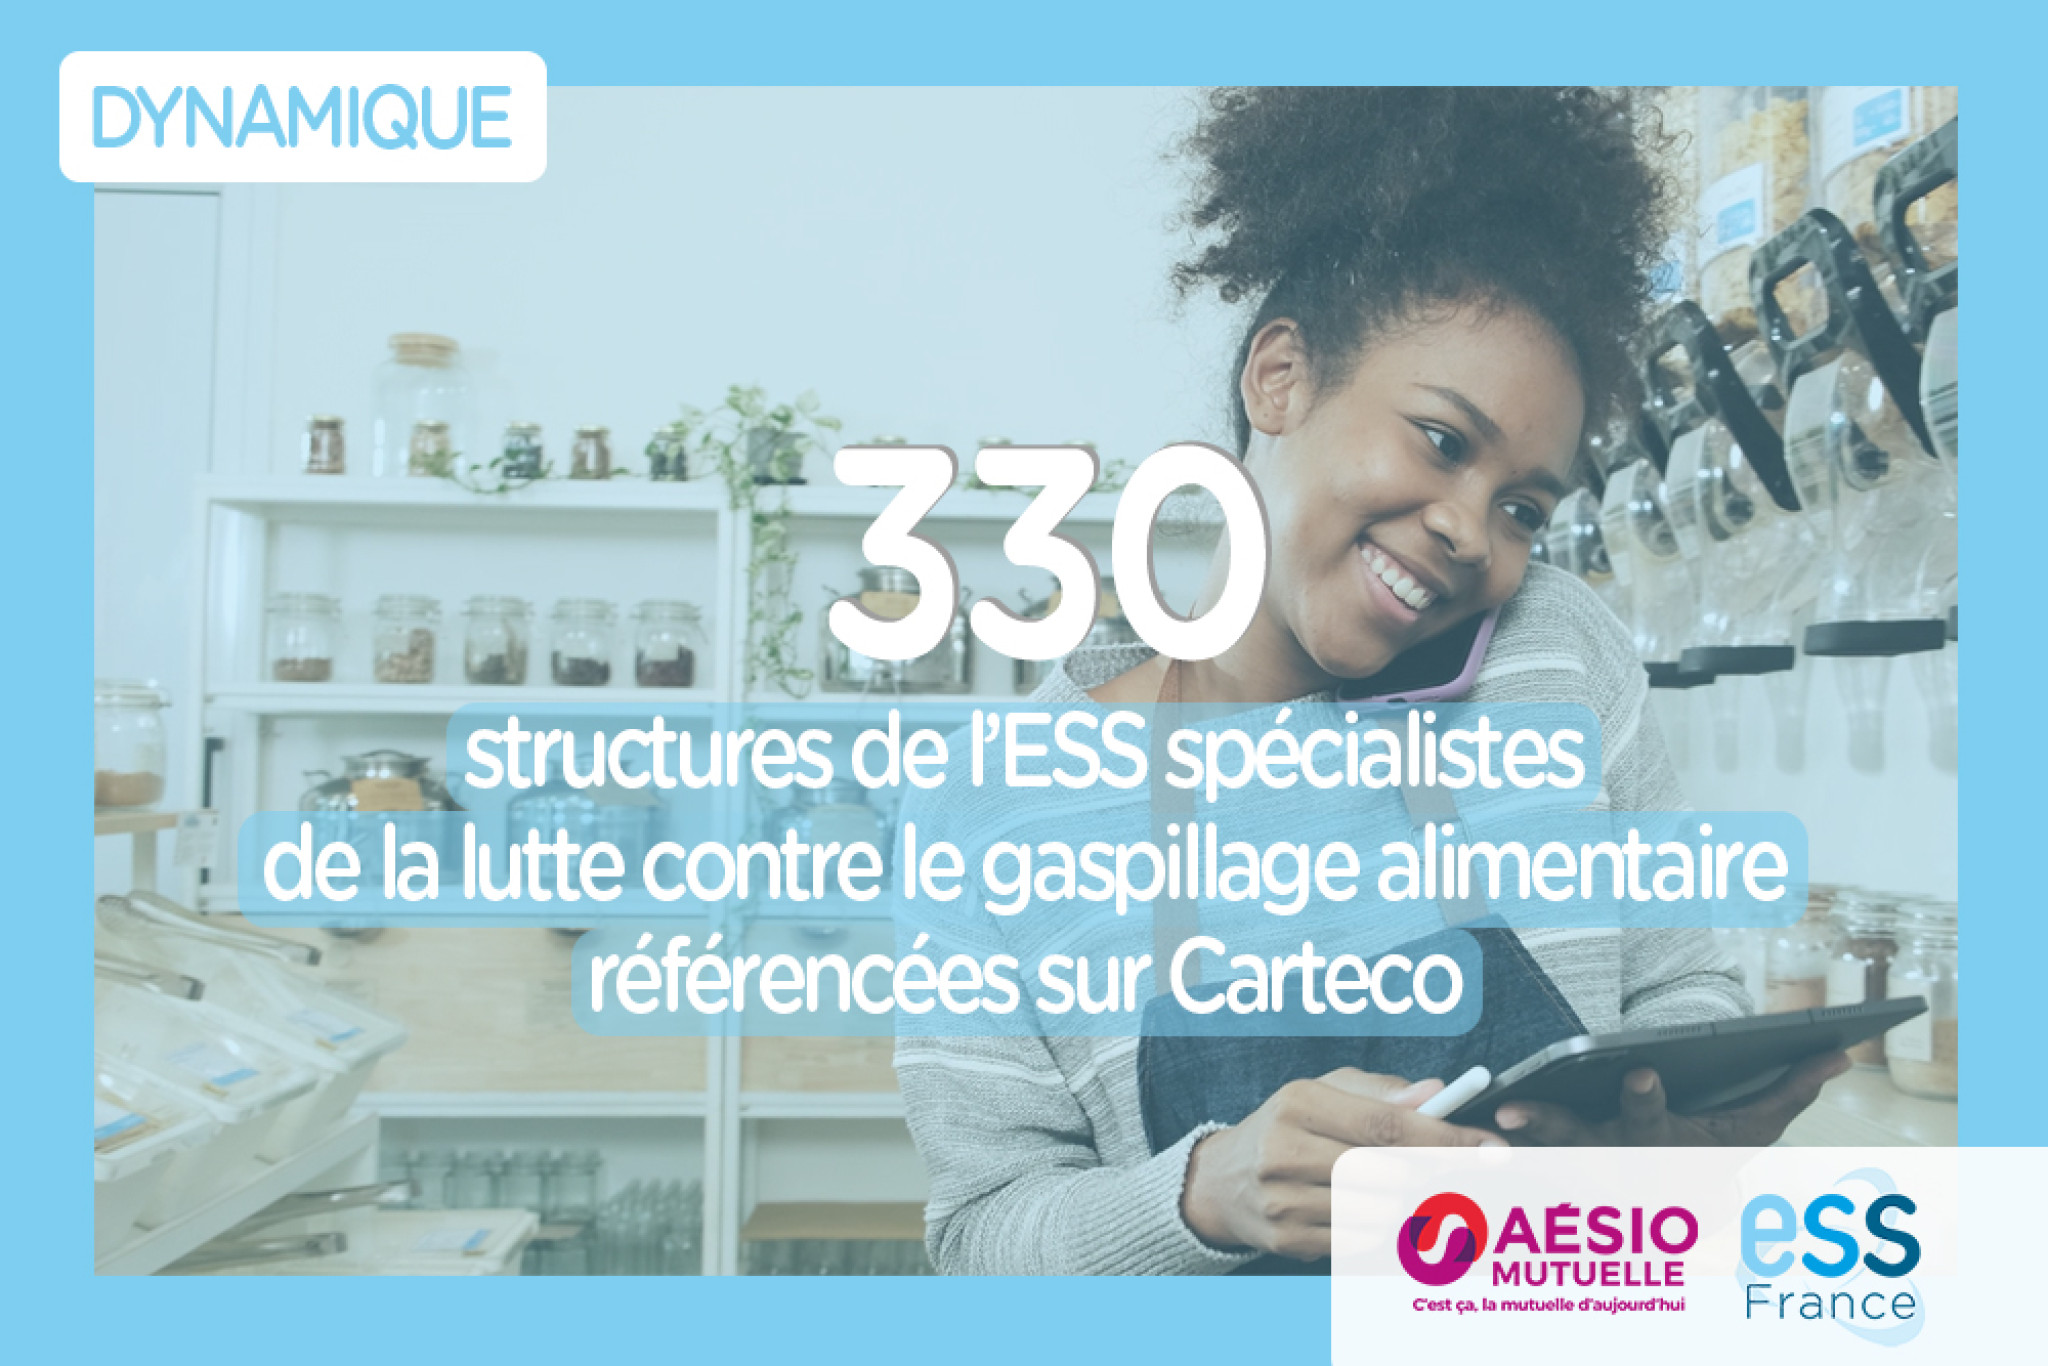 330 structures de l’ESS spécialistes de la lutte contre le gaspillage alimentaire référencées sur Carteco !